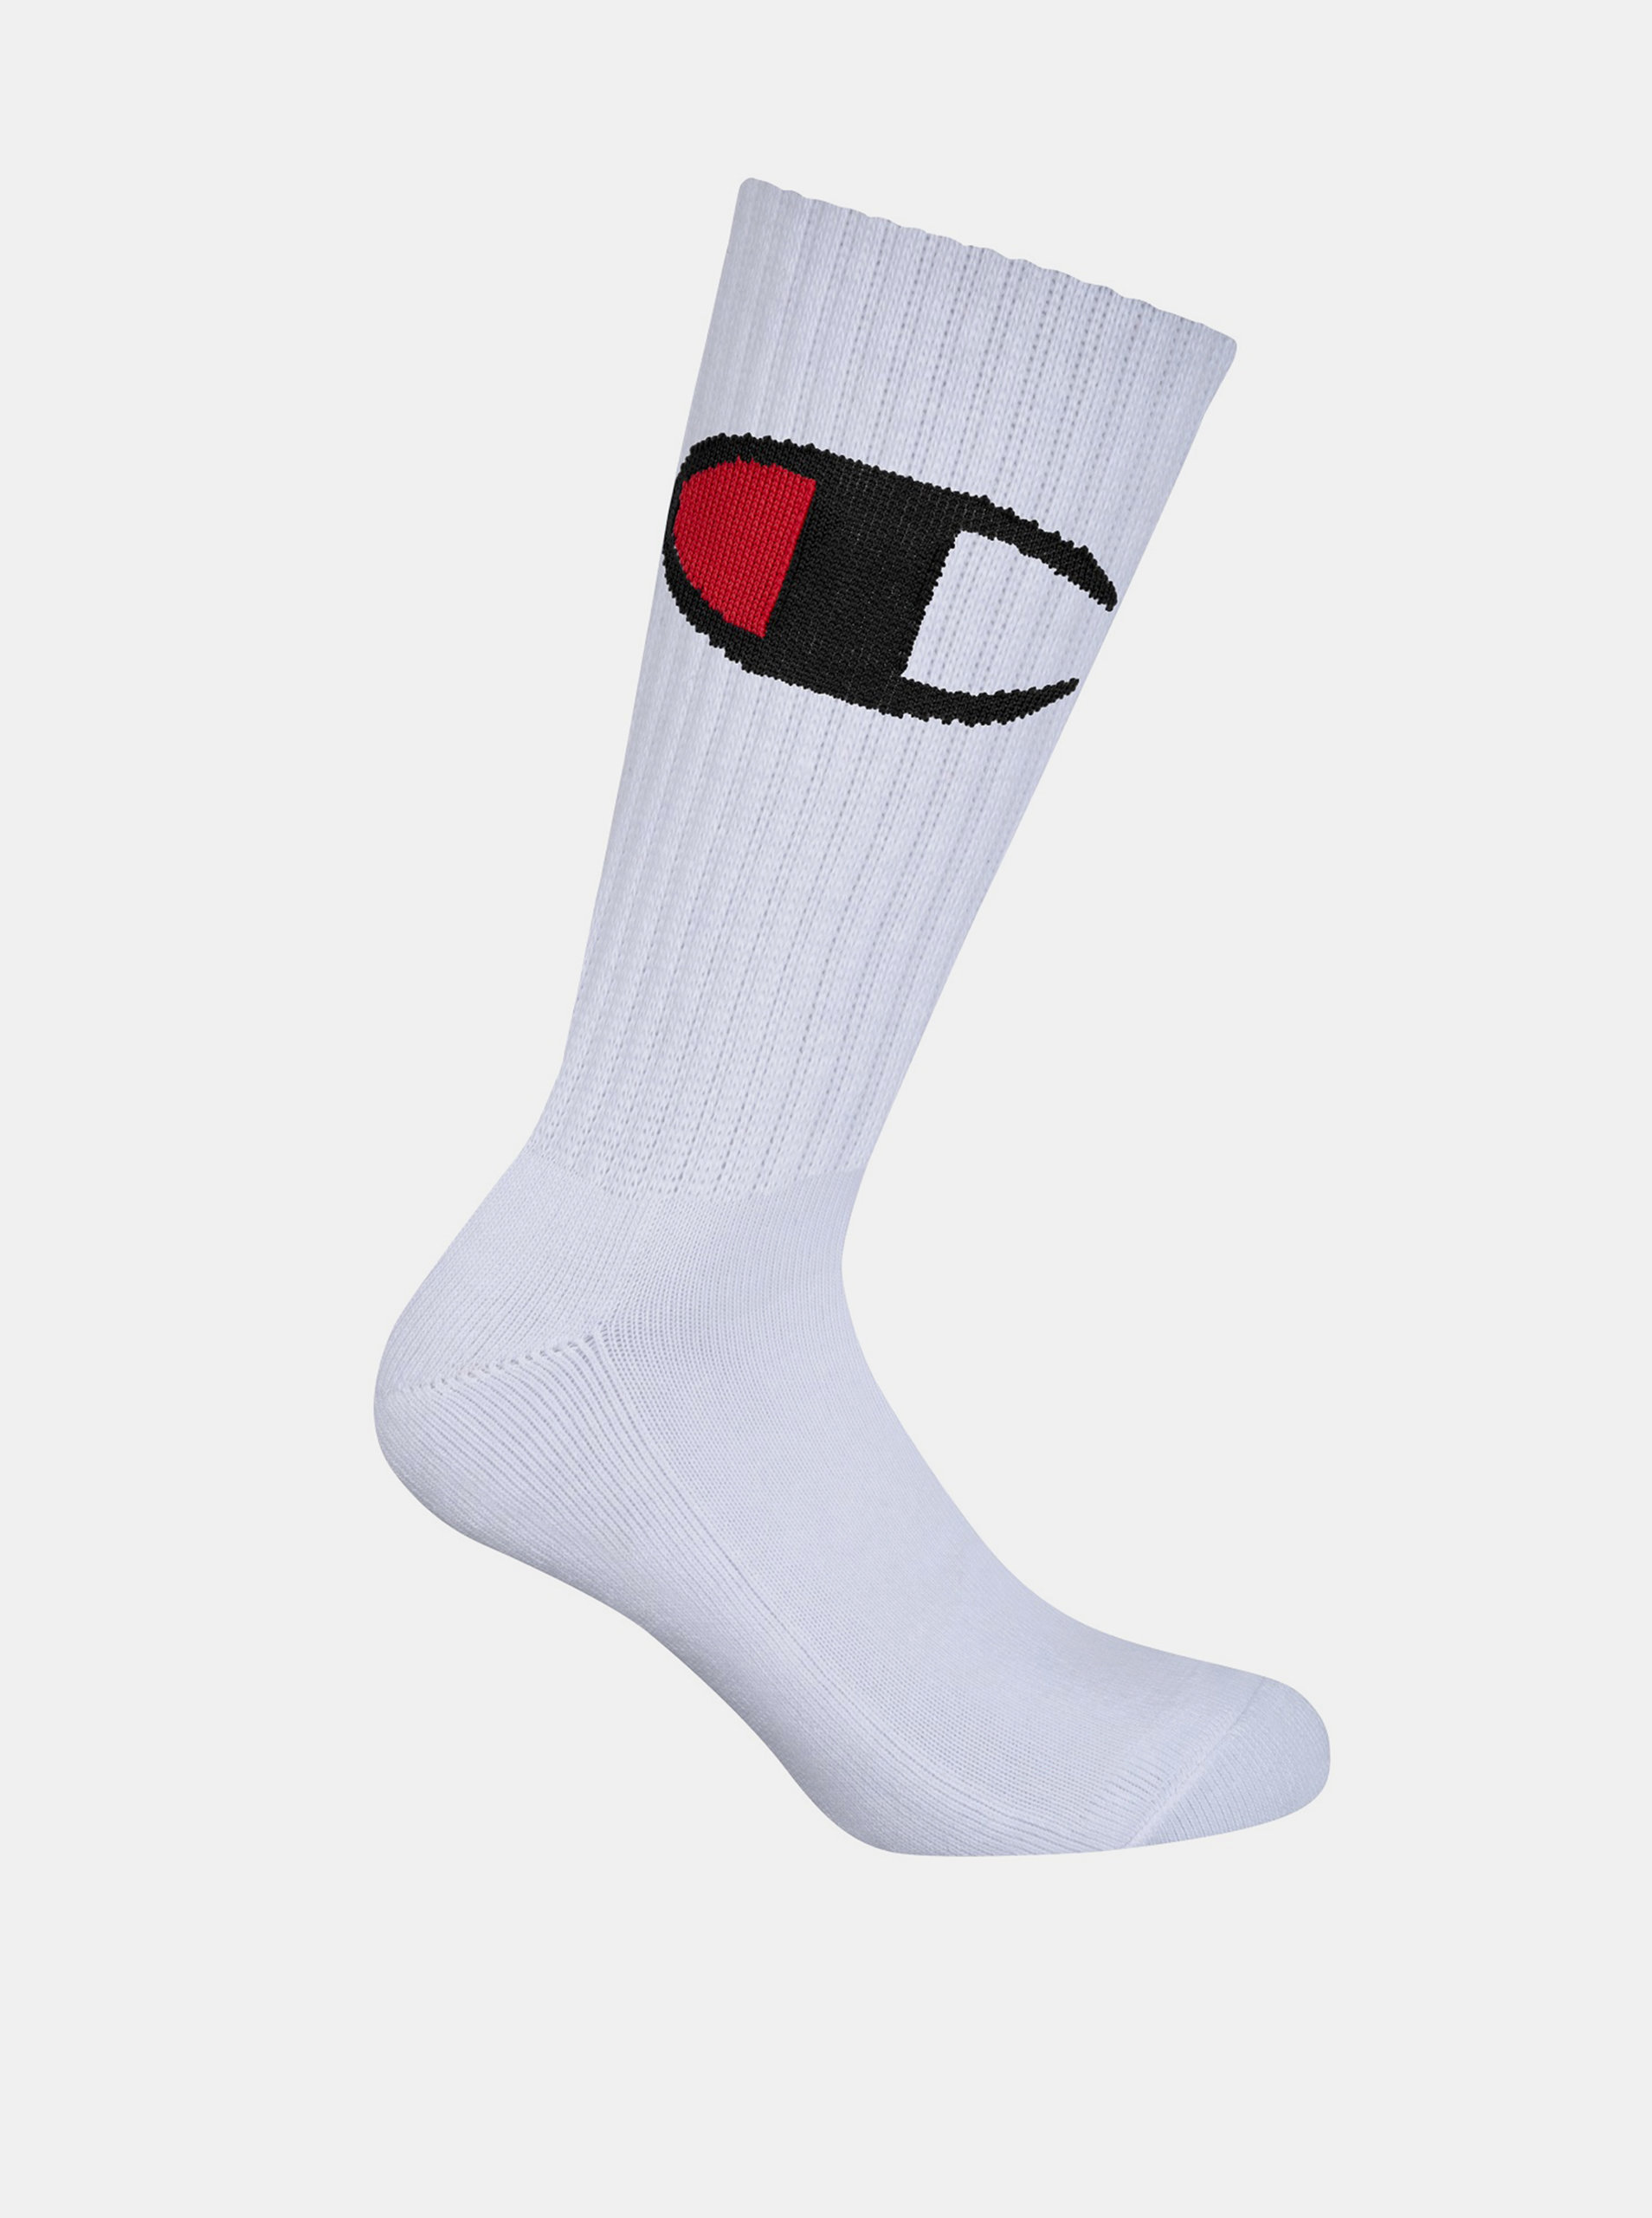 CREW SOCKS ROCHESTER BIG C - Vyšší módní sportovní ponožky 1 pár - bílá